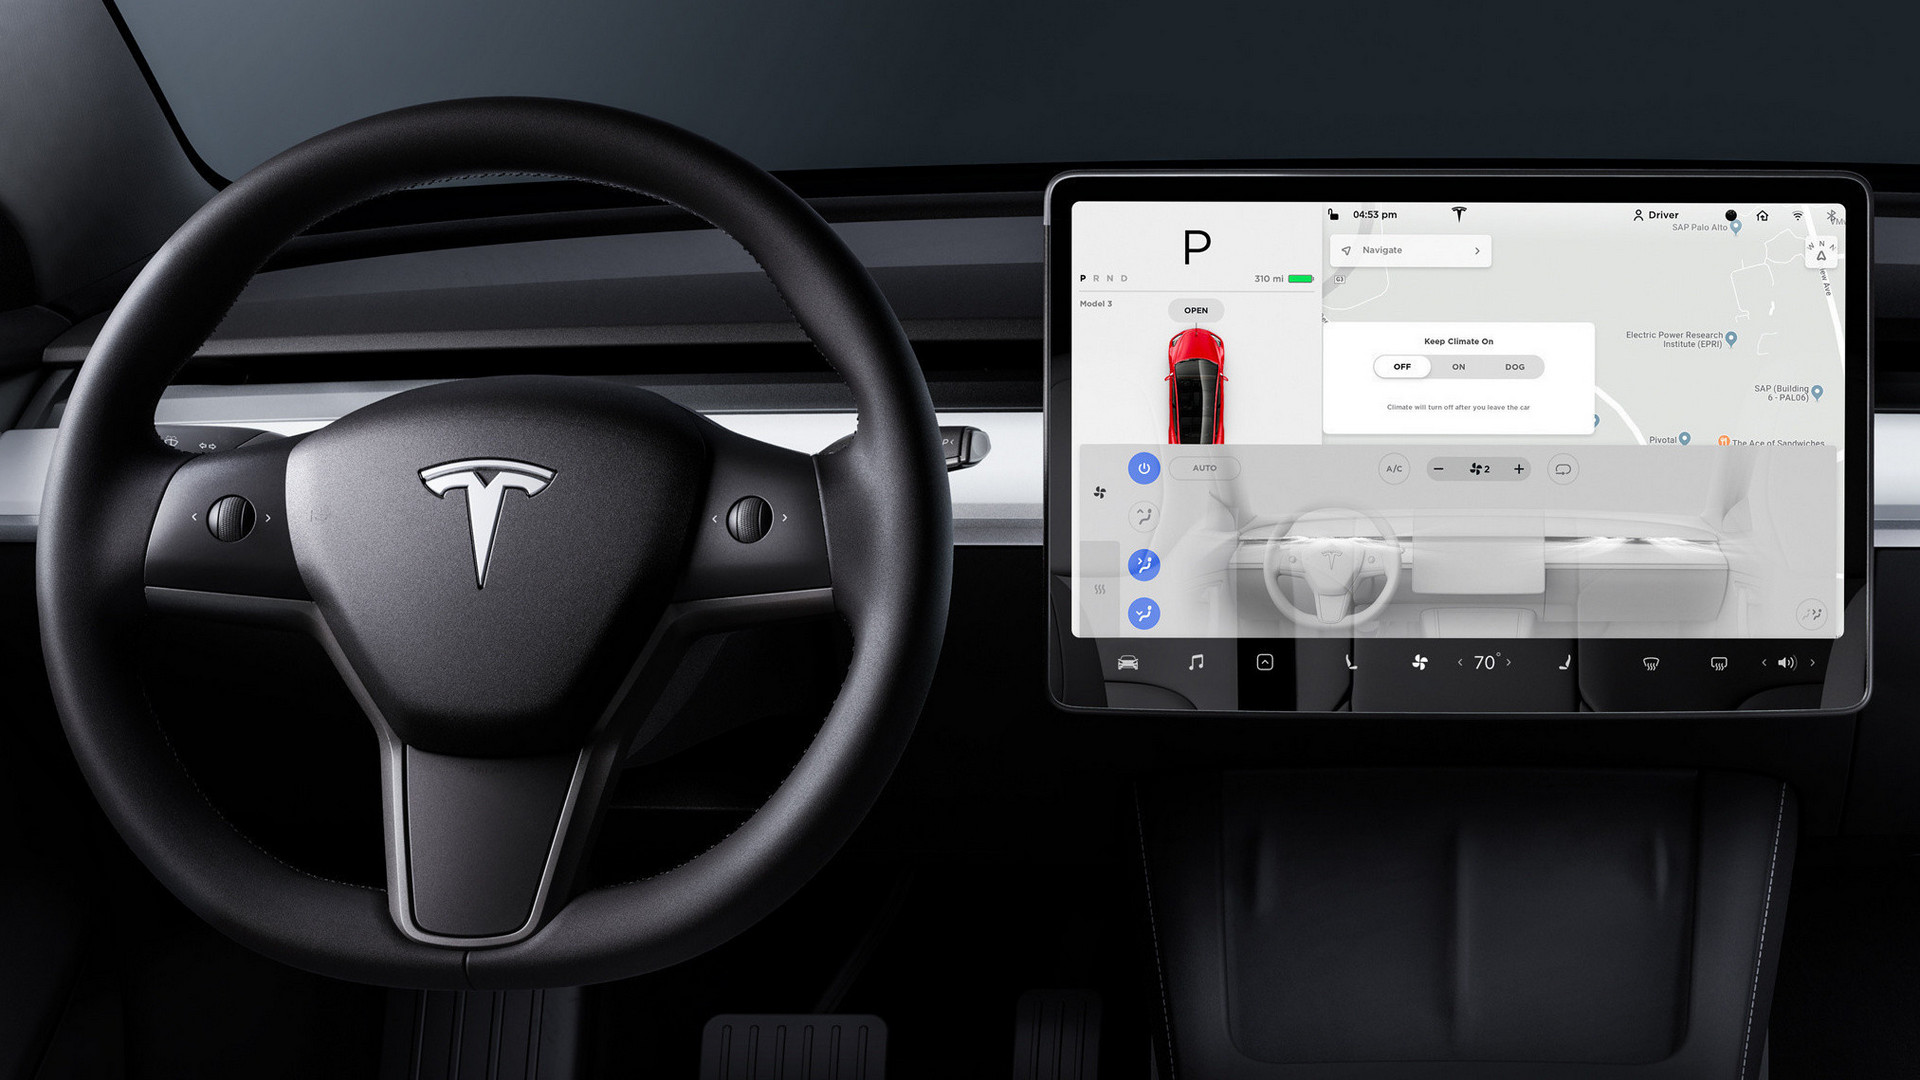 Tesla Model S und X: Das steckt hinter dem Preiskampf von Elon Musk